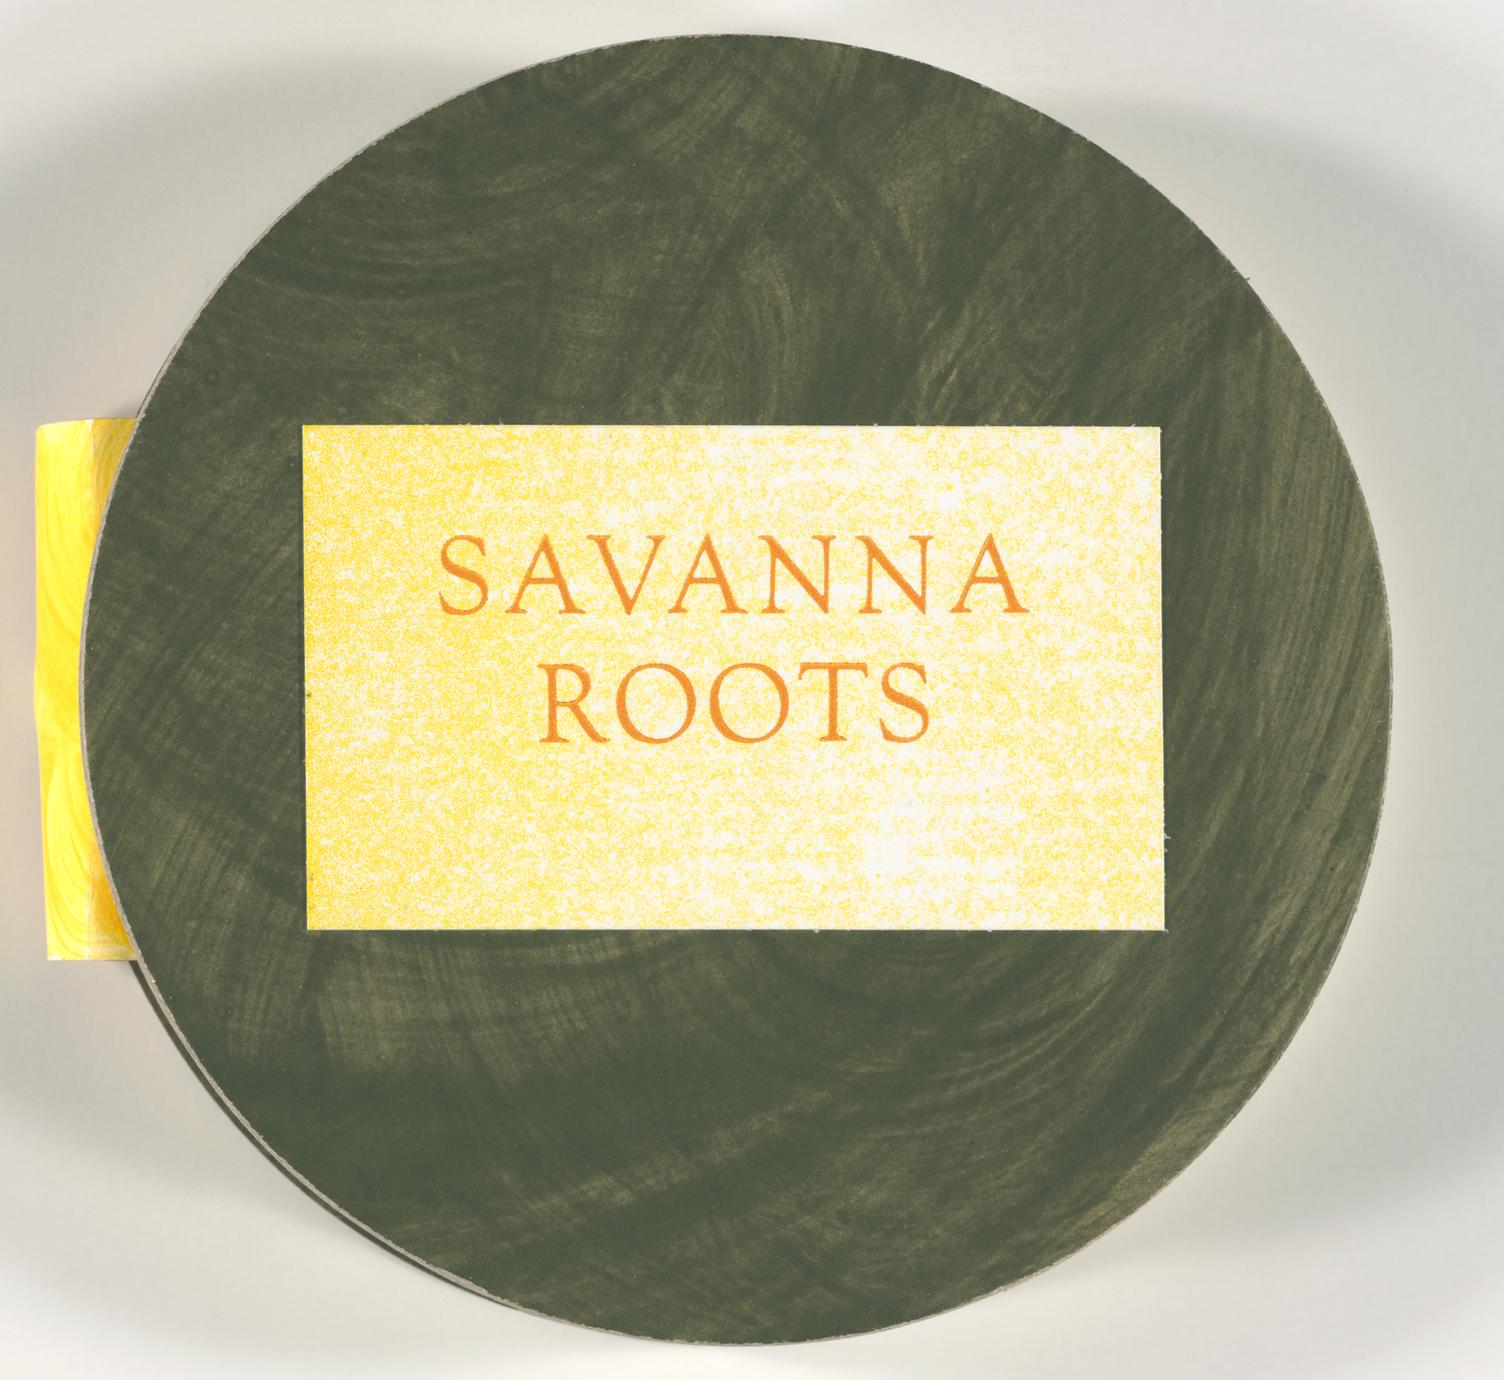 Savanna roots (1 of 3)